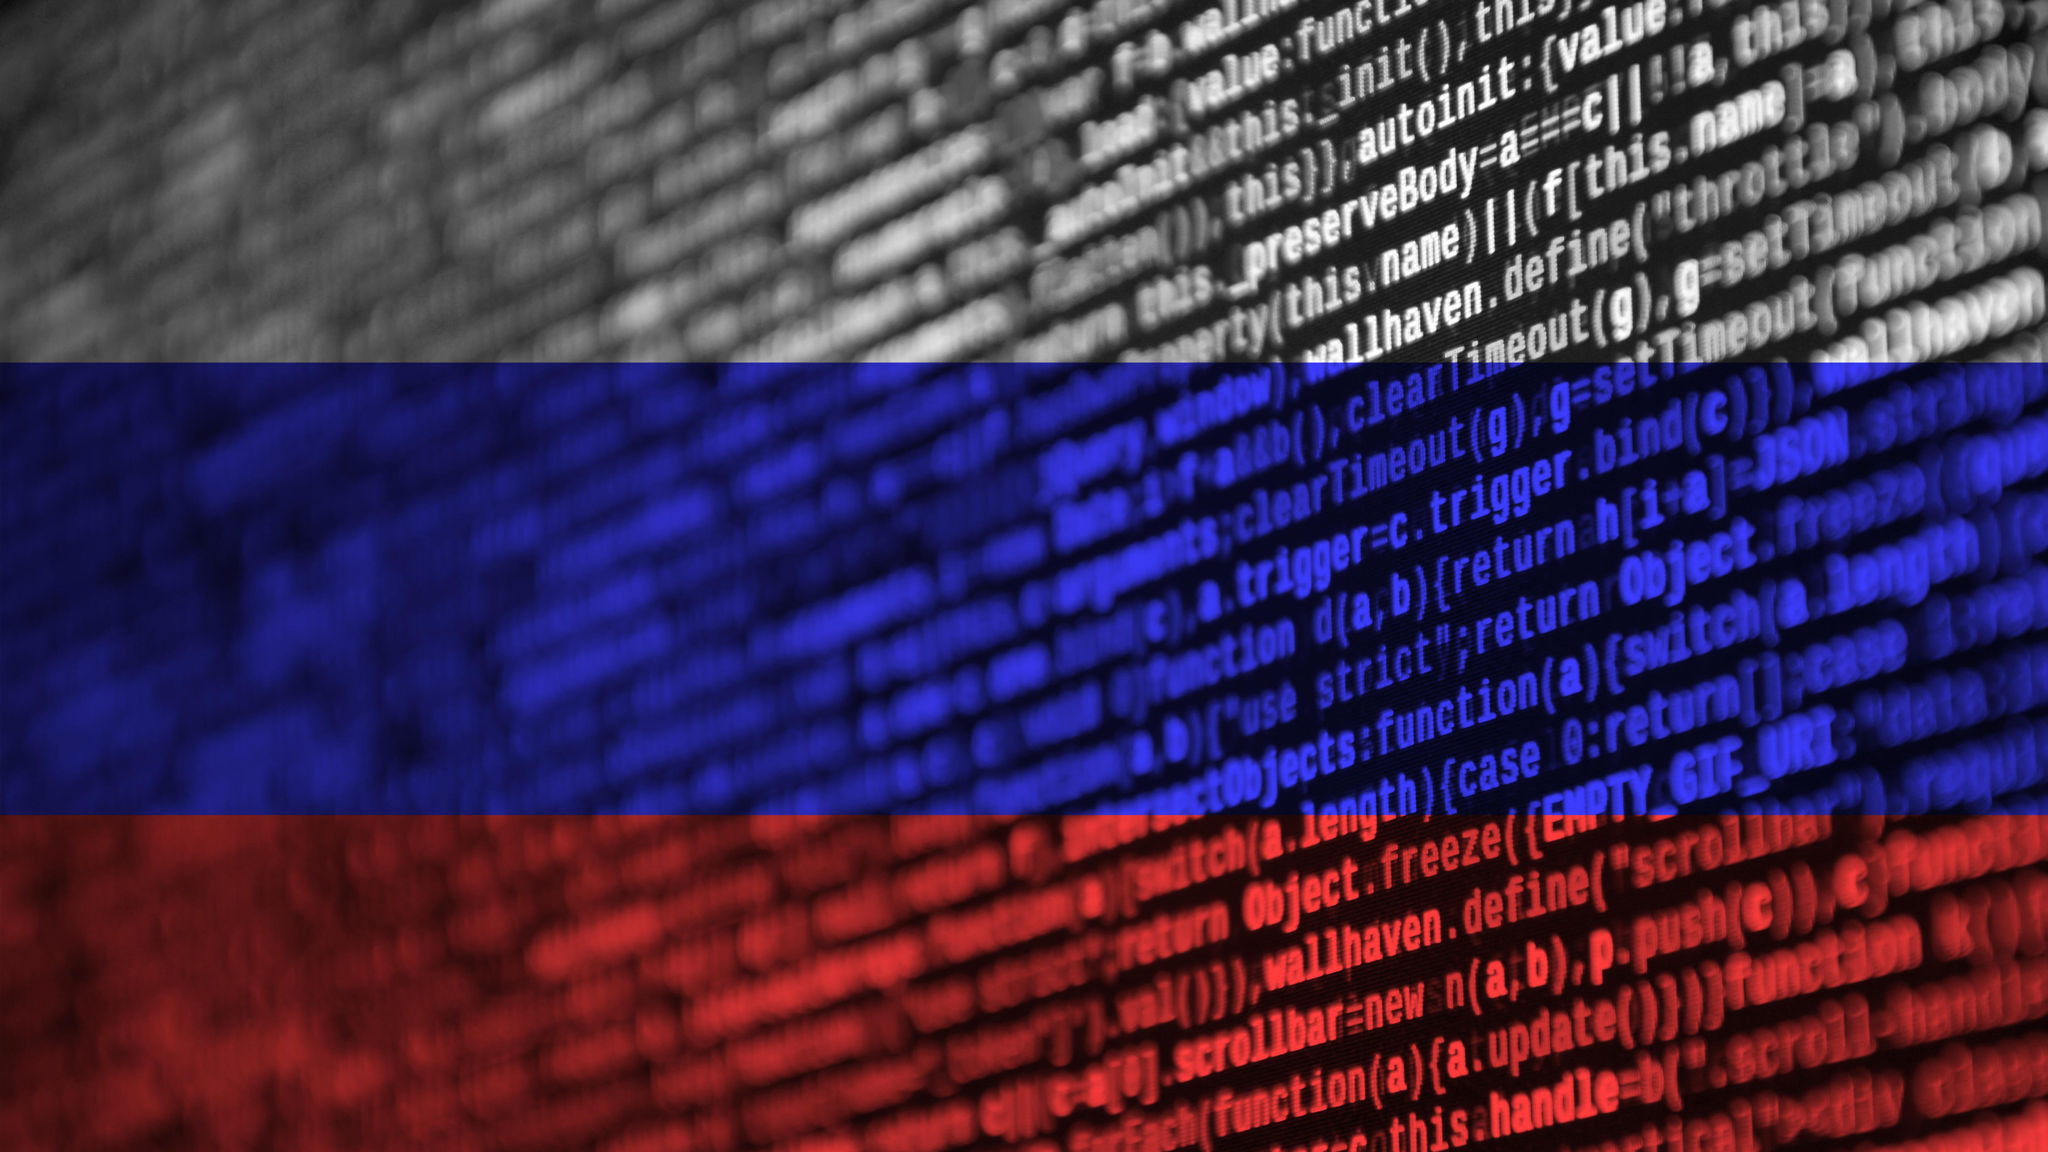 Минцифры планирует потратить 25 миллиардов до 2030 года на развитие кибербезопасности в России